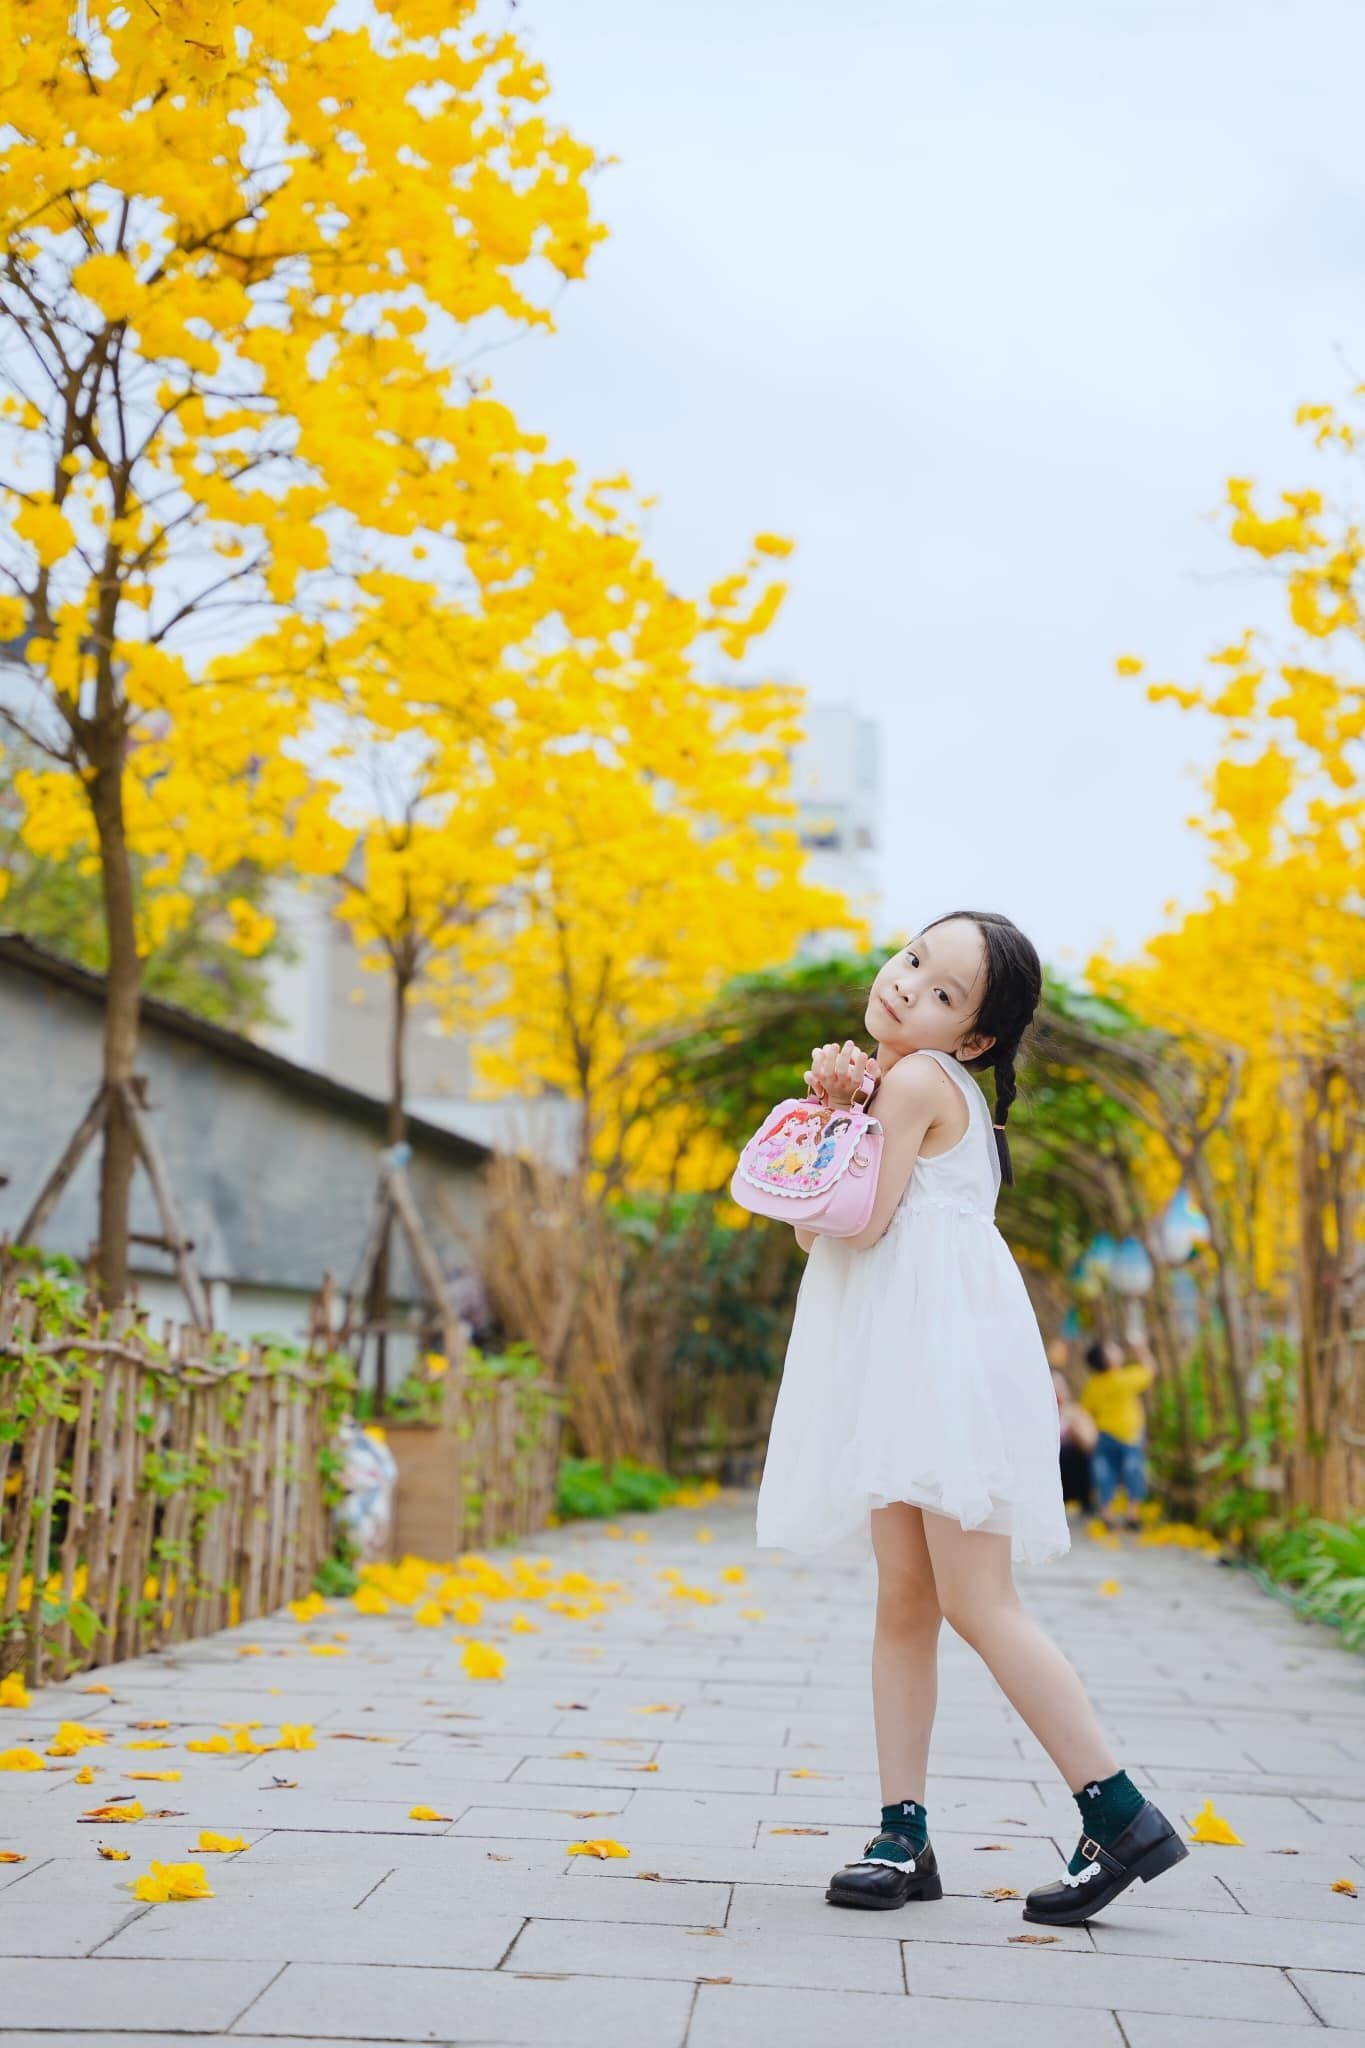 Ngắm hoa phong linh nở vàng rực rỡ ở Hà Nội